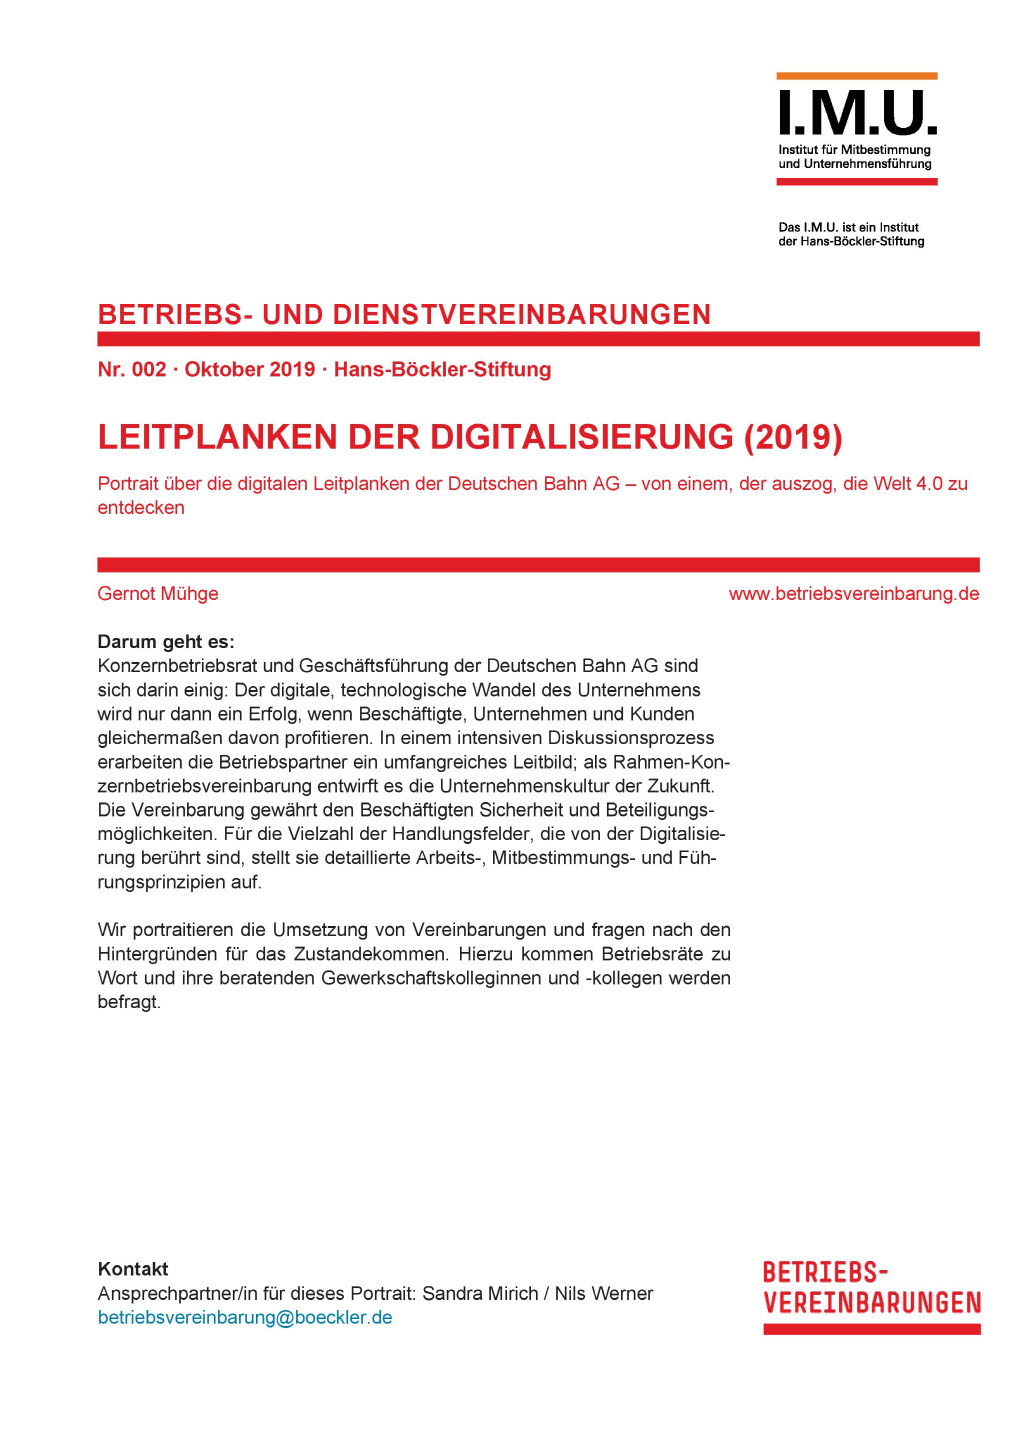 Leitplanken der Digitalisierung (2019)